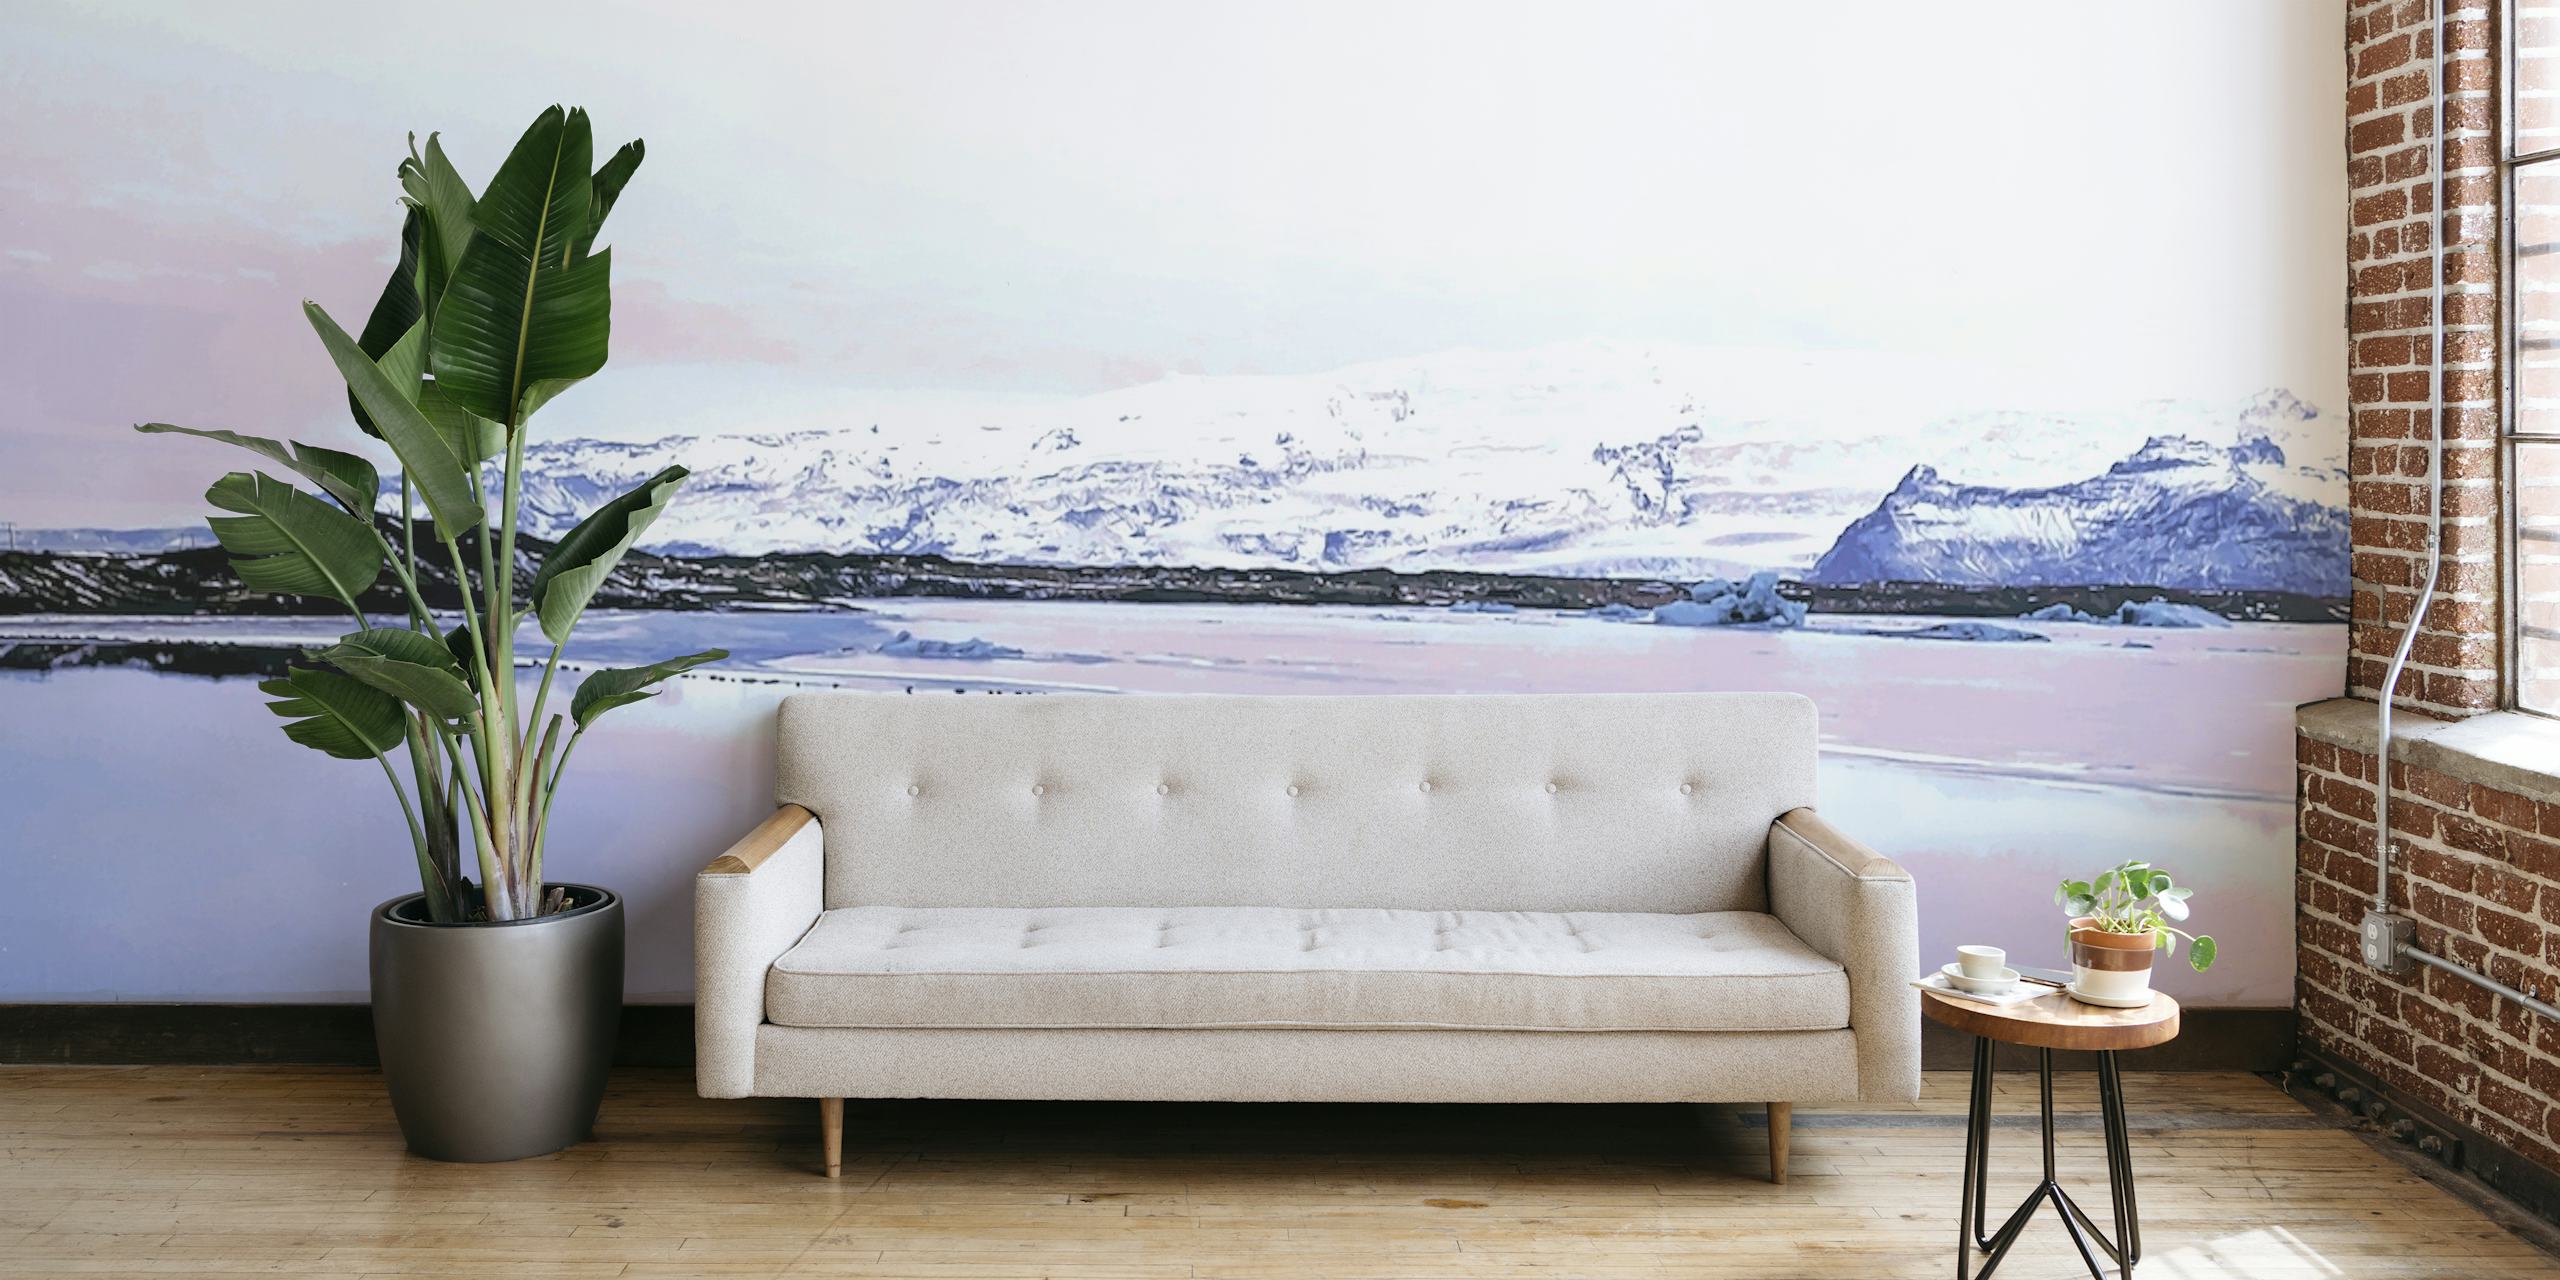 Islandsk landskabsvægmaleri med sneklædte bjerge og vandreflektioner